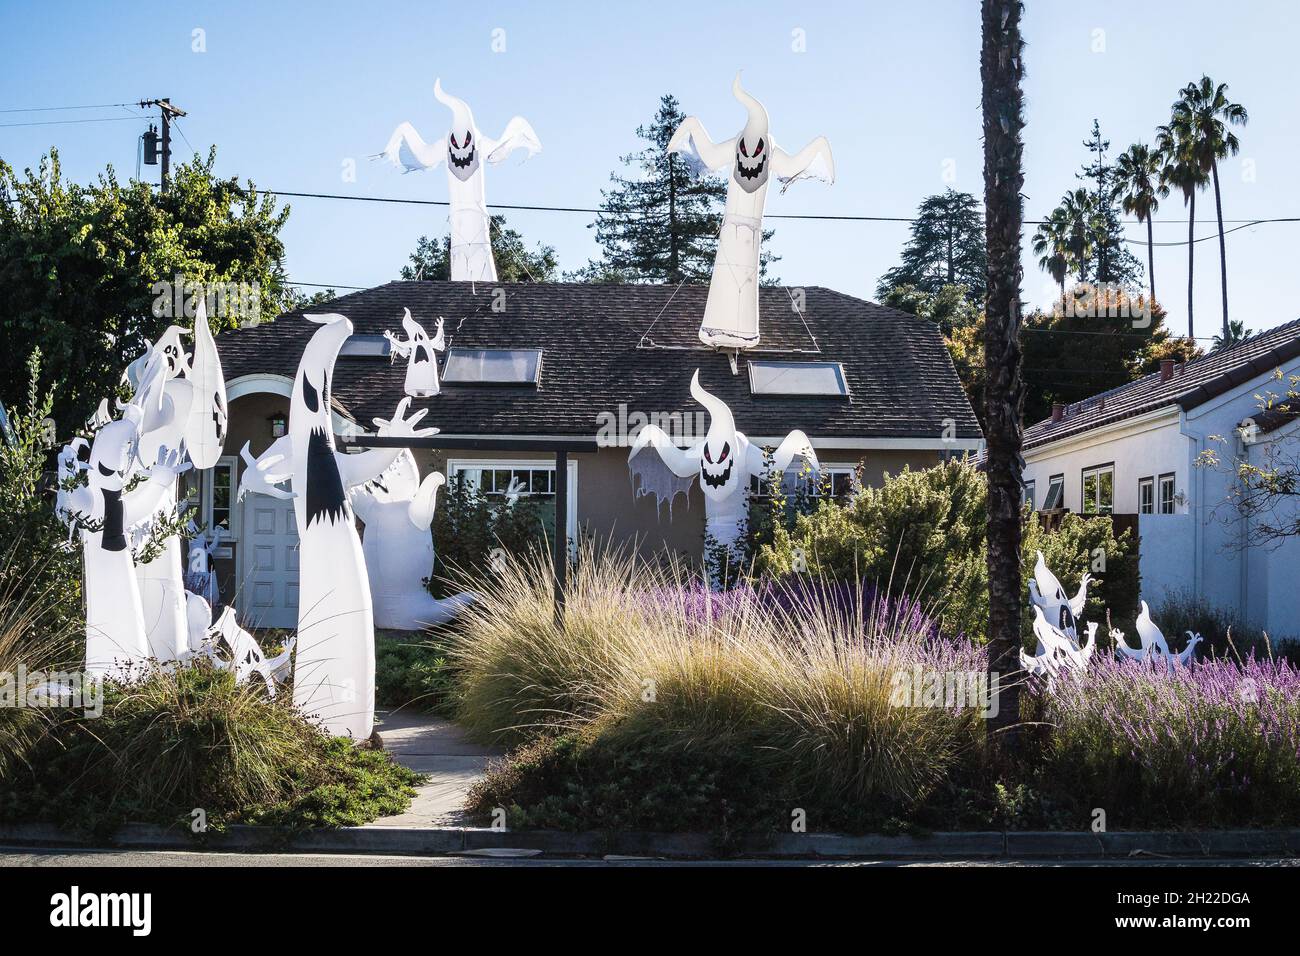 Petite maison hantée en Californie avec plus d'une douzaine de fantômes gonflables; sur le toit et dans le jardin parmi les plantes - un halloween spooktaculaire Banque D'Images